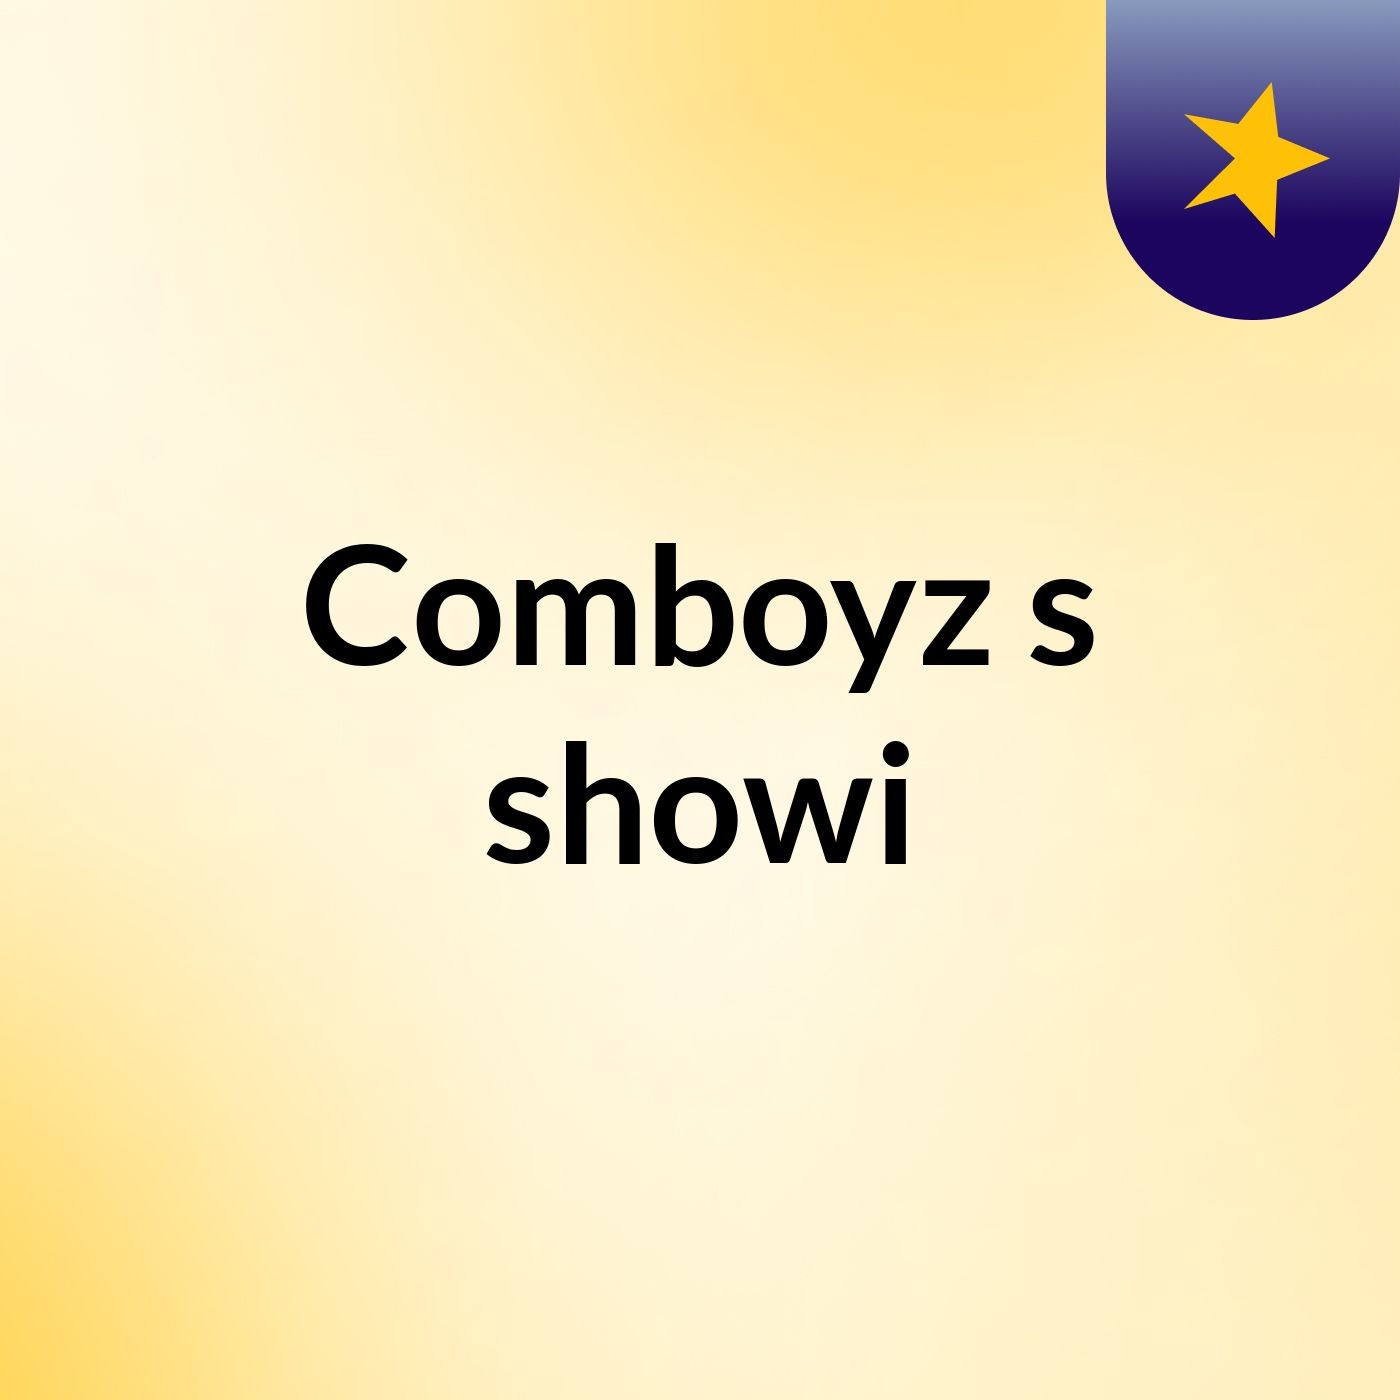 Comboyz's showi